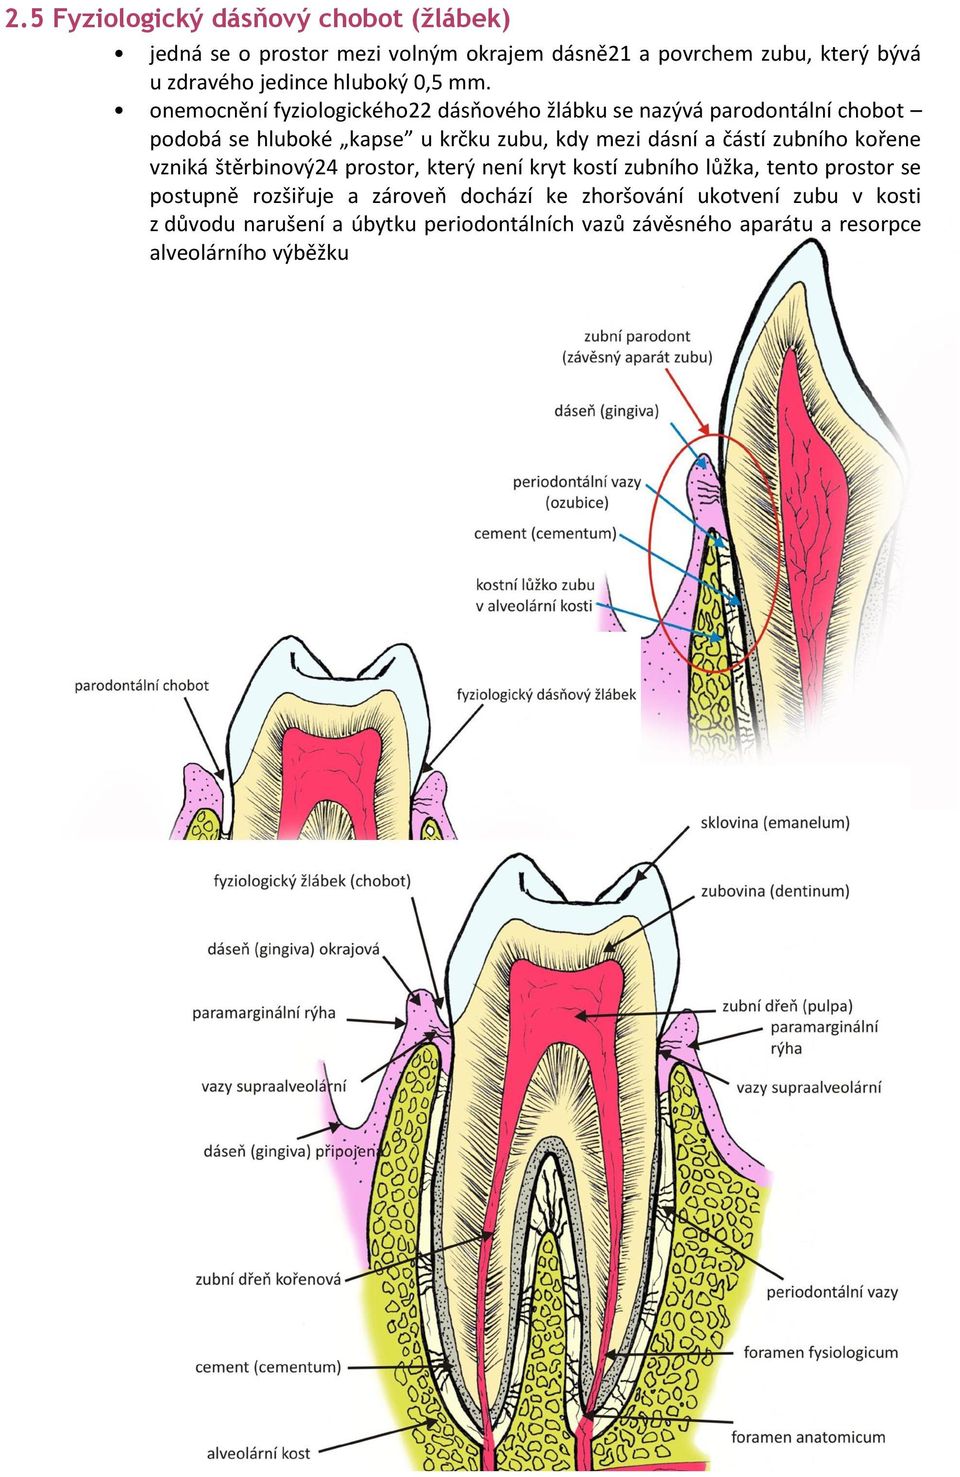 onemocnění fyziologického22 dásňového žlábku se nazývá parodontální chobot podobá se hluboké kapse u krčku zubu, kdy mezi dásní a částí